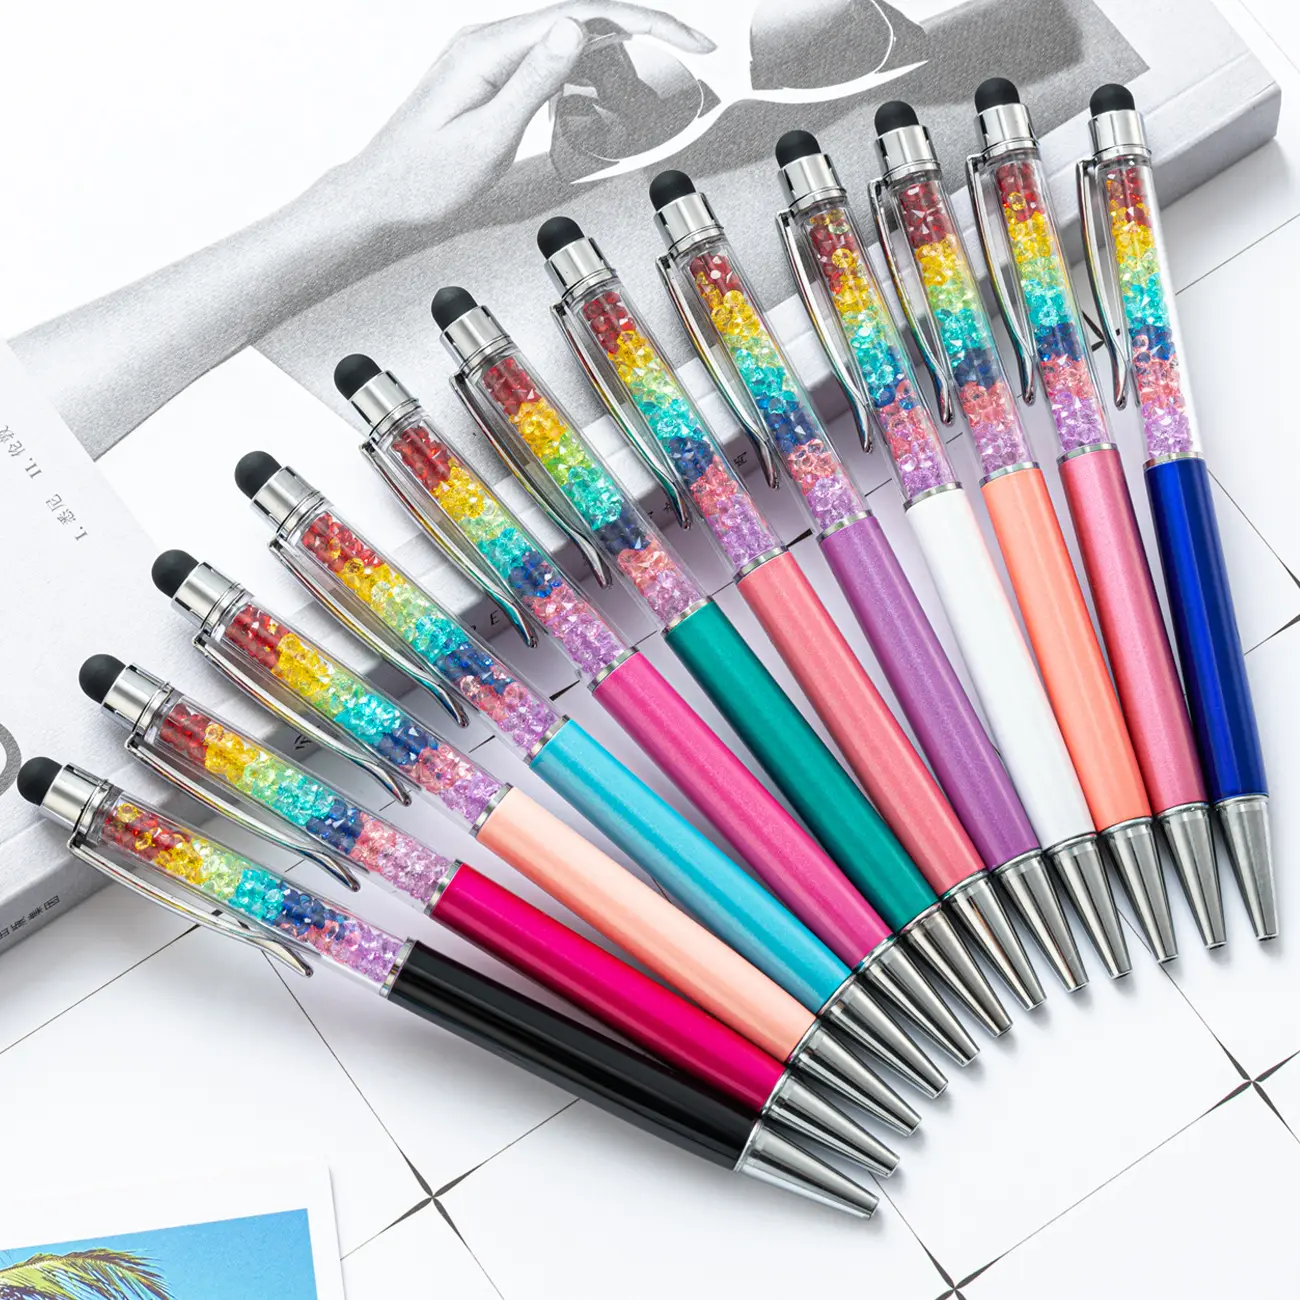 Toptan hediyeler dokunmatik ekran gökkuşağı kristal kalem özel logo ile Glitter renkli yazma Metal tükenmez kalemler